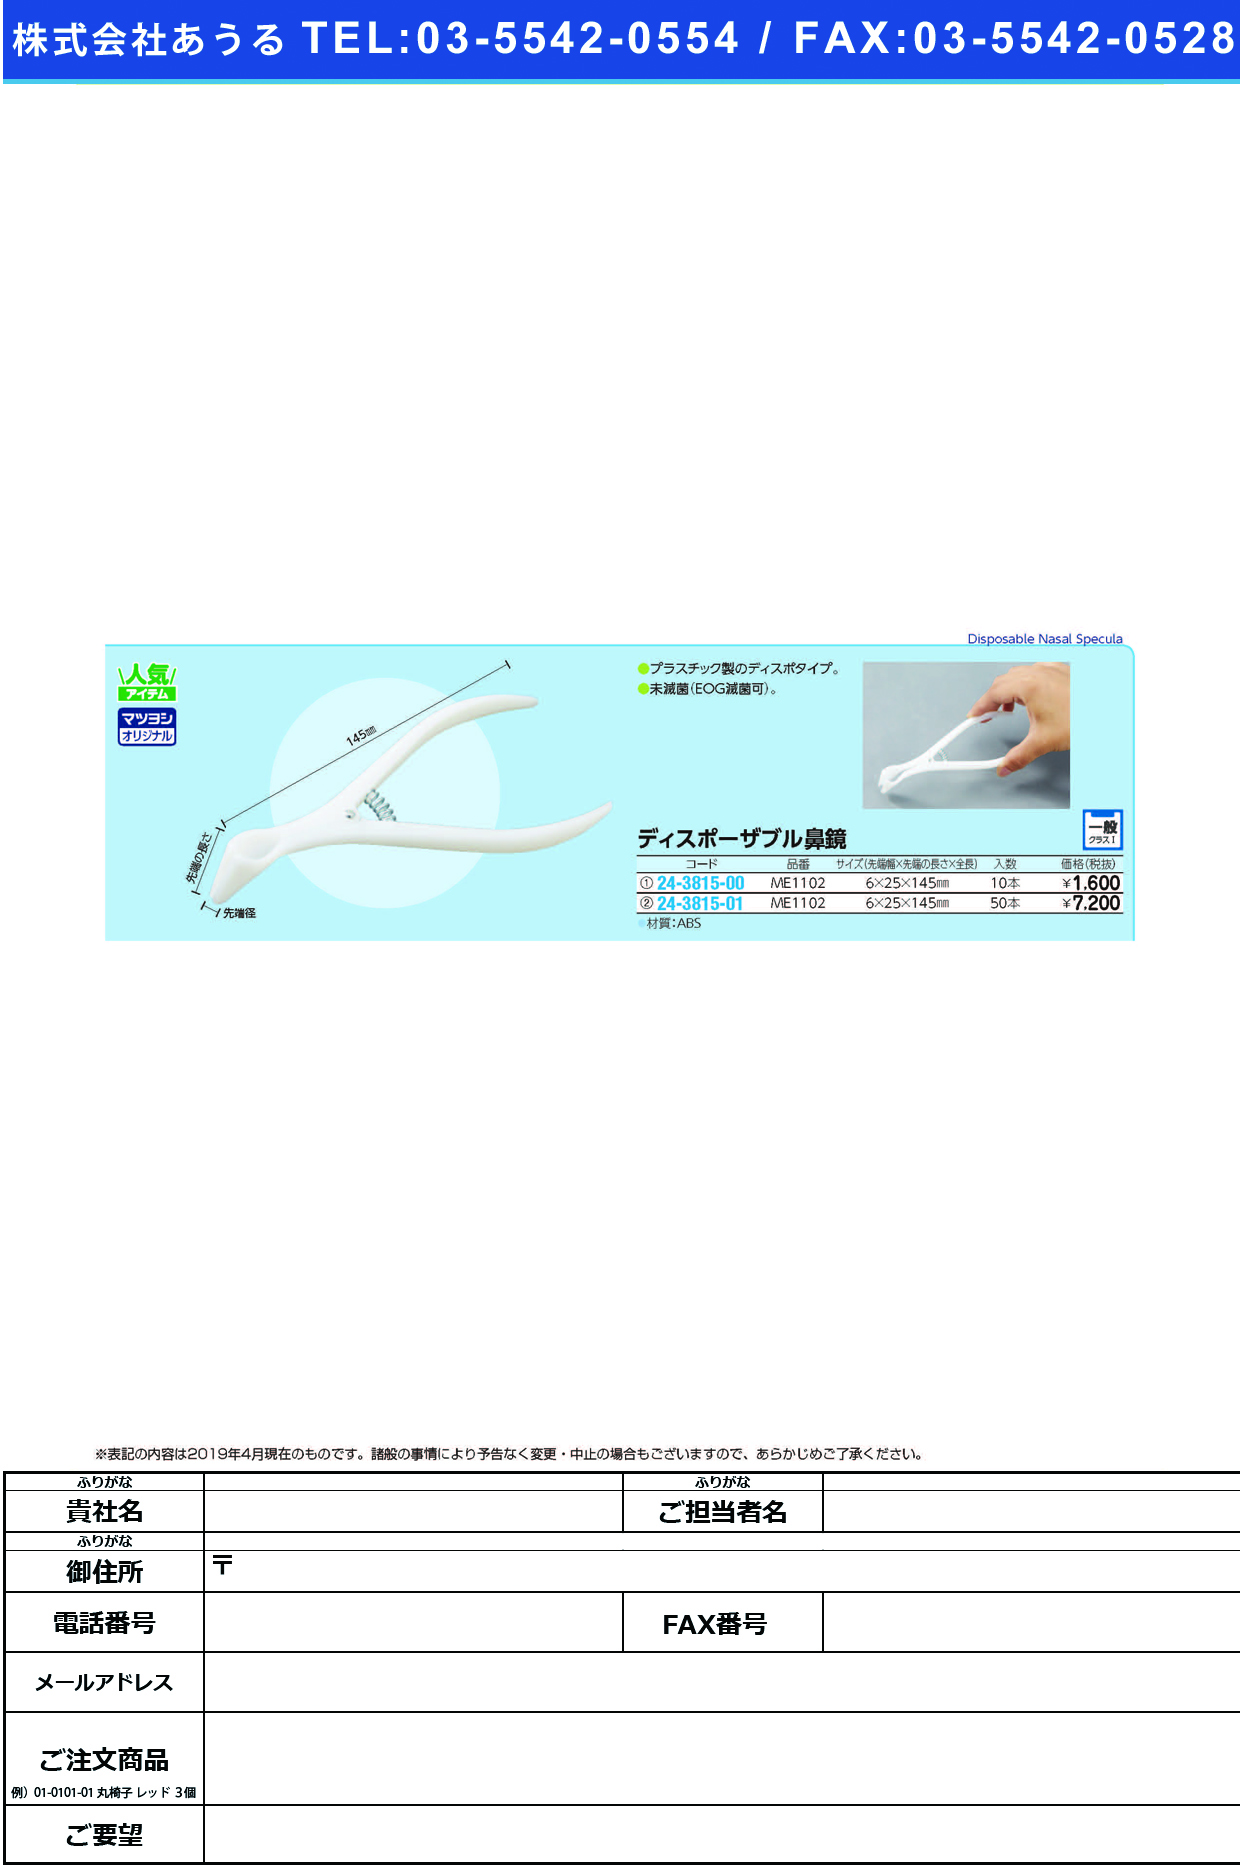 (24-3815-01)ディスポーザブル鼻鏡 ME1102(50ﾎﾟﾝｲﾘ) ﾃﾞｨｽﾎﾟｰｻﾞﾌﾞﾙﾋﾞｷｮｳ【1袋単位】【2019年カタログ商品】